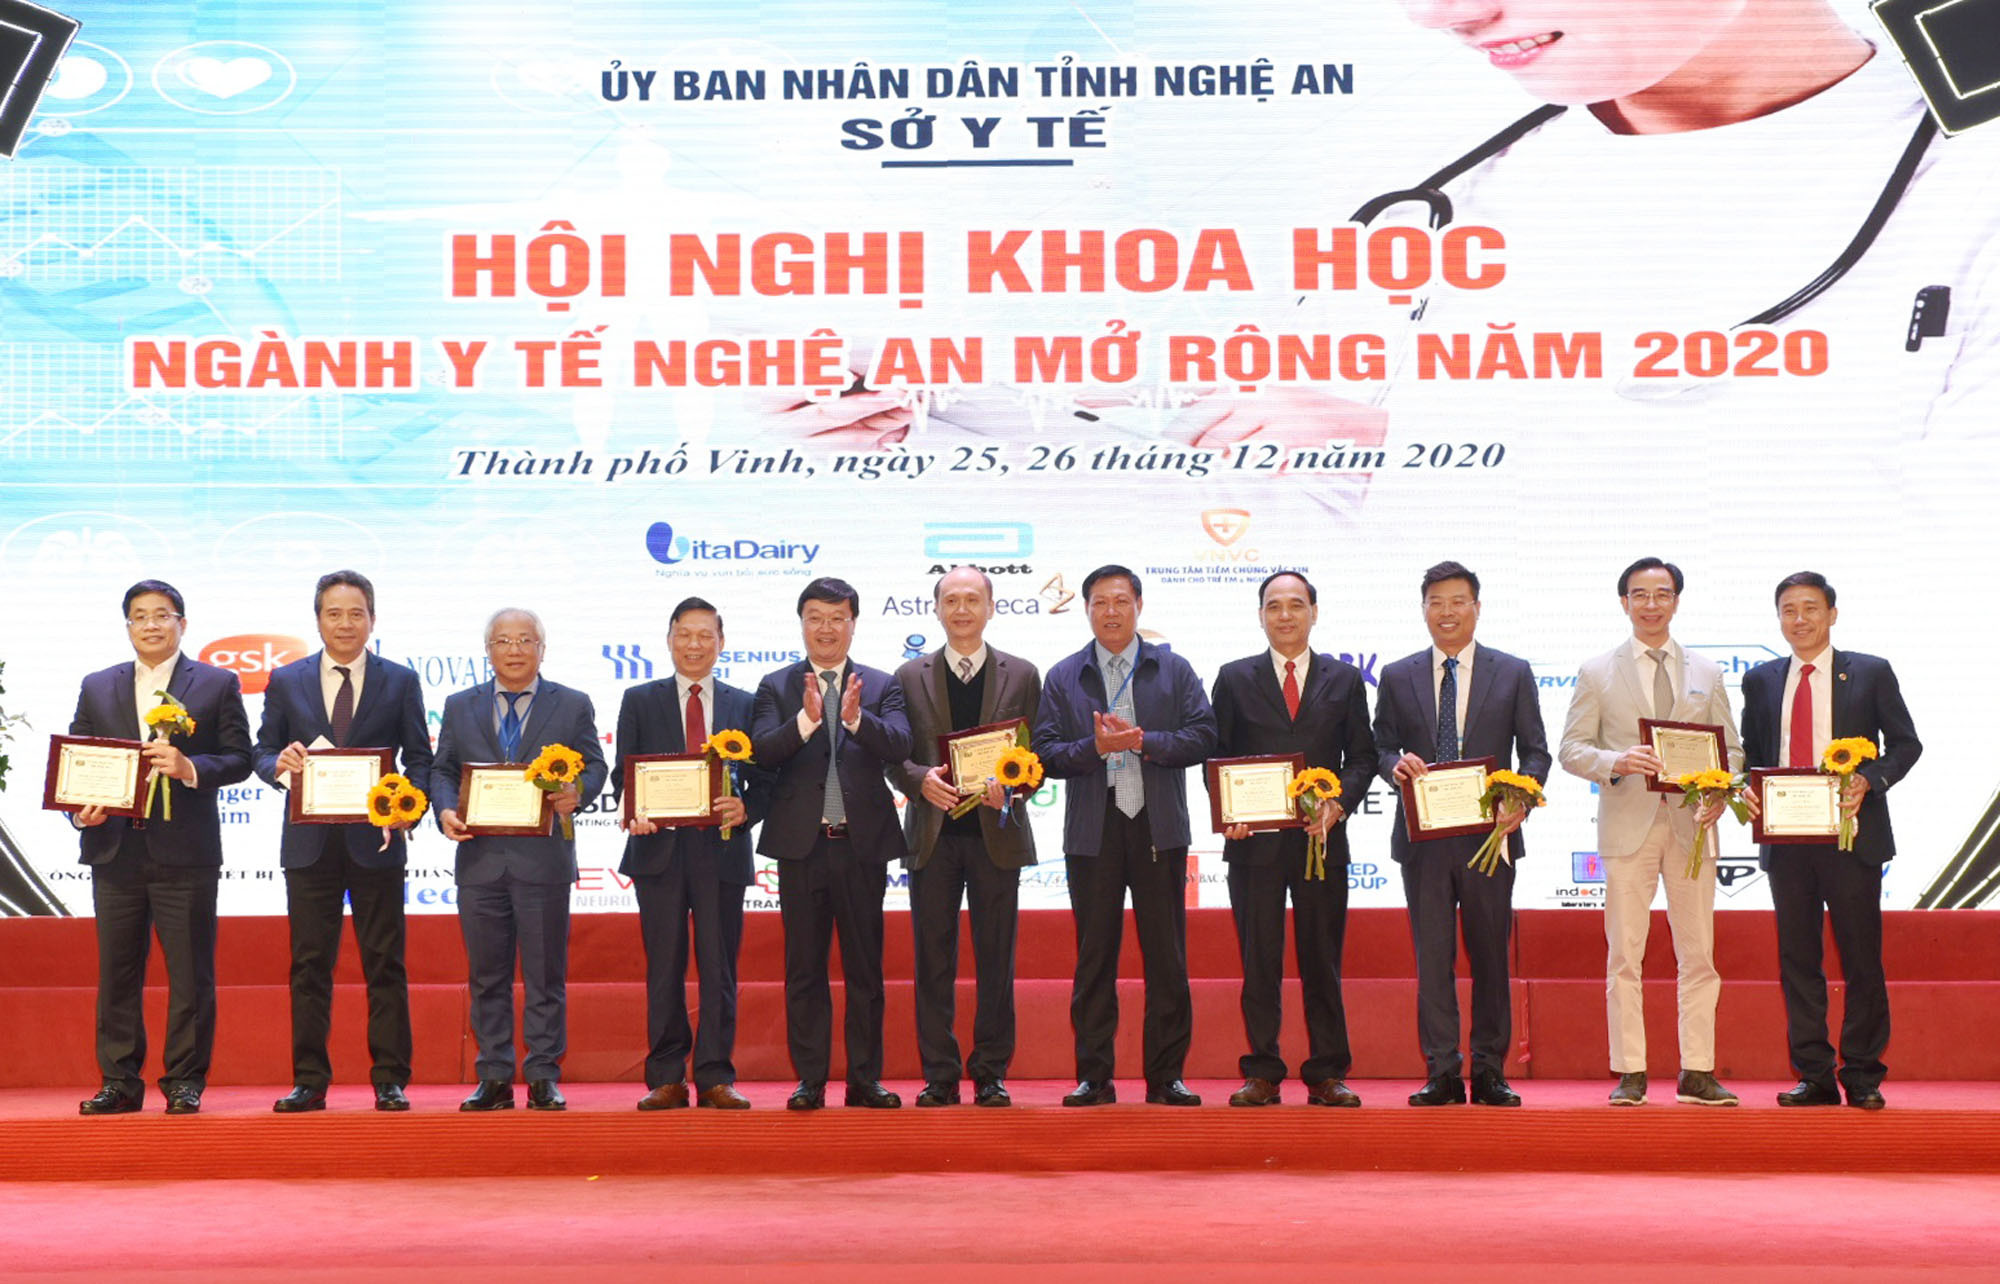 Thứ trưởng Bộ Y tế và Chủ tịch UBND tỉnh Nghệ An tặng kỷ niệm chương cho các nhà khoa học đã đến có bài tham luận tại hội nghị. Ảnh: Thành Chung